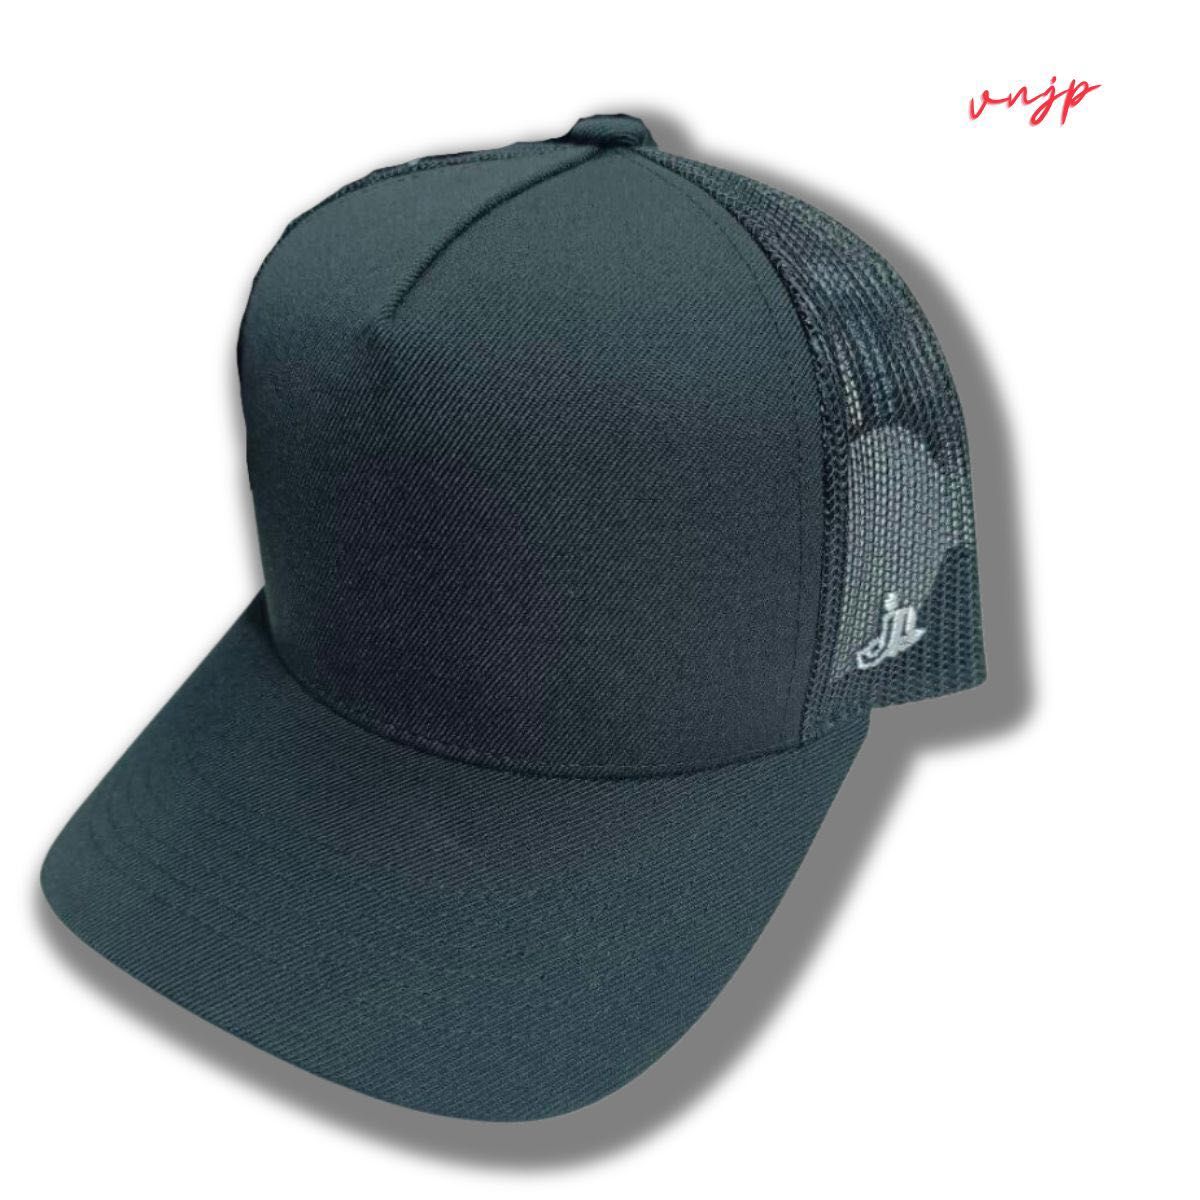 【値引きキャンペーン】新品 キャップ 帽子 メッシュキャップ フリーサイズ キャップ帽子メンズ